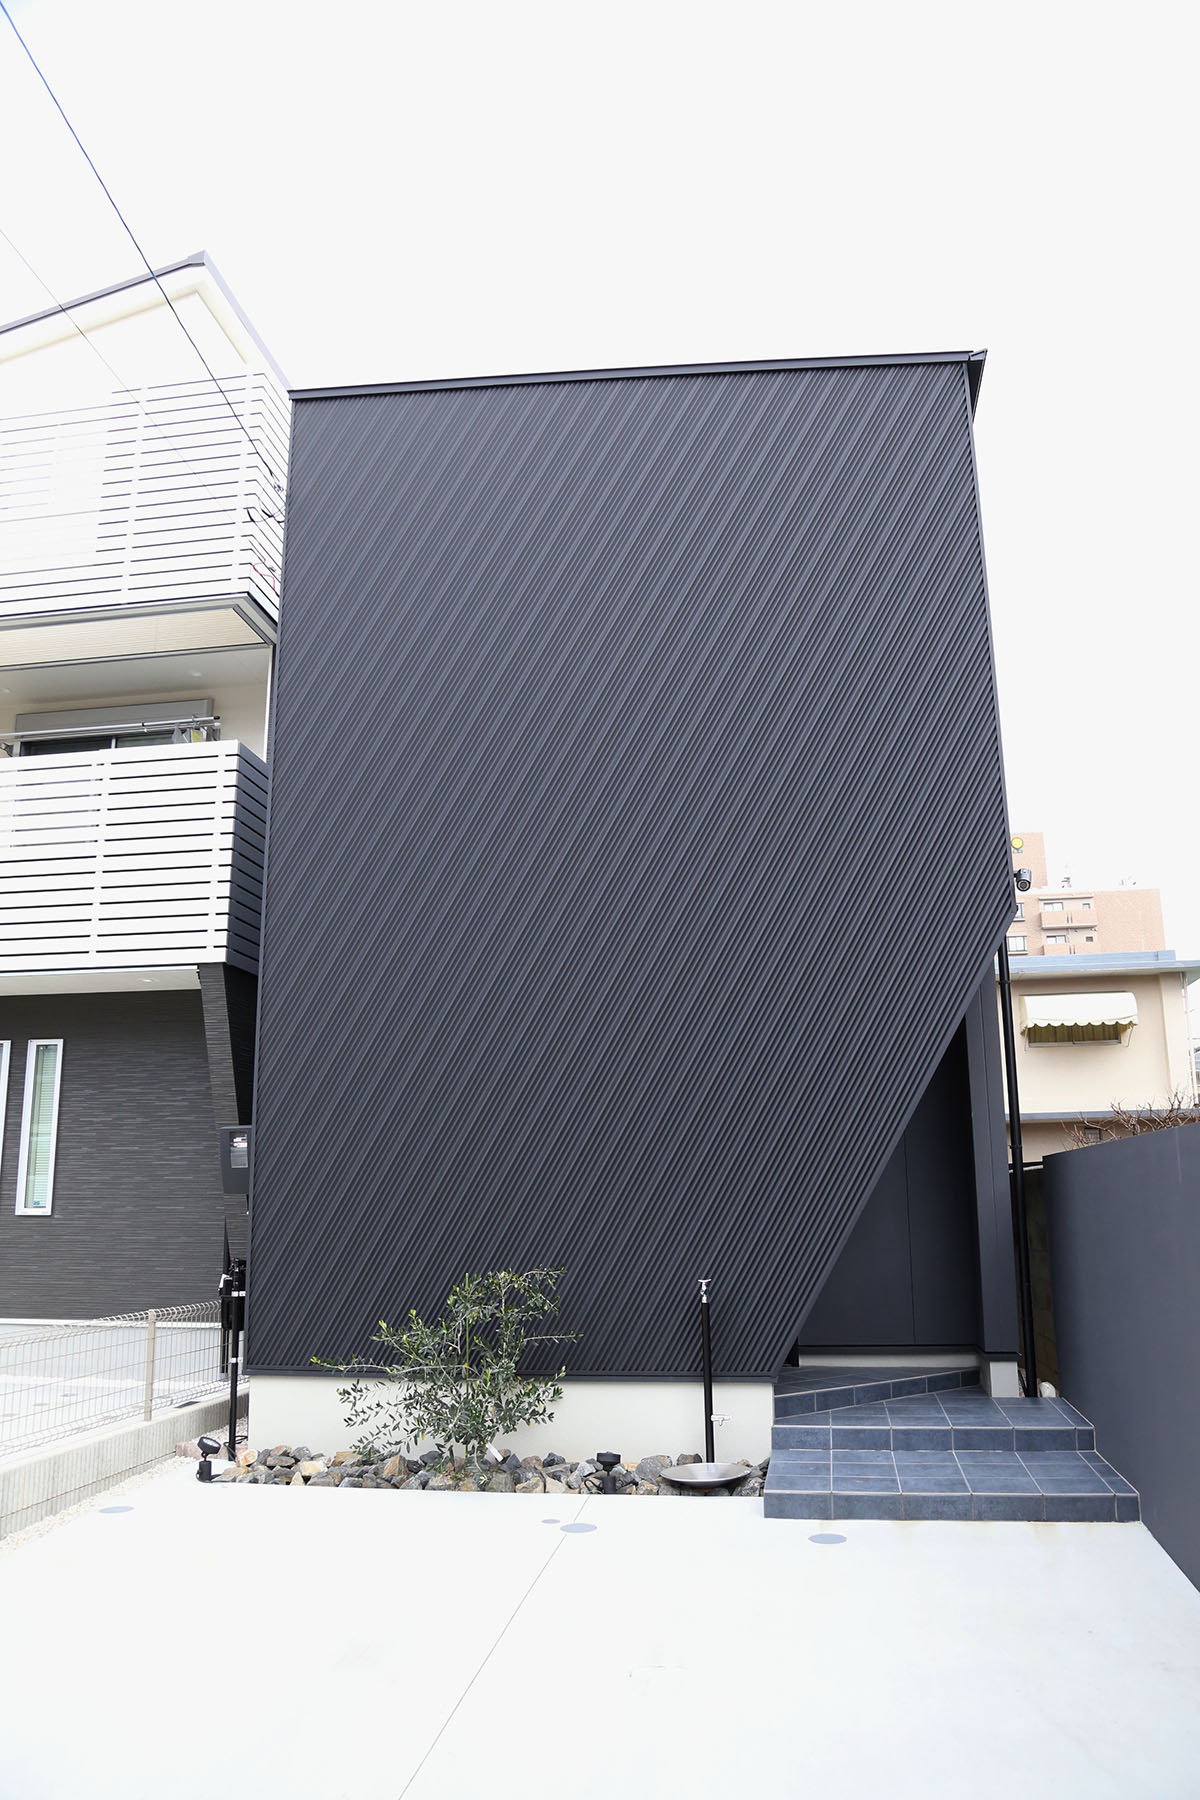 ブラック一色のキューブ型の家の外観